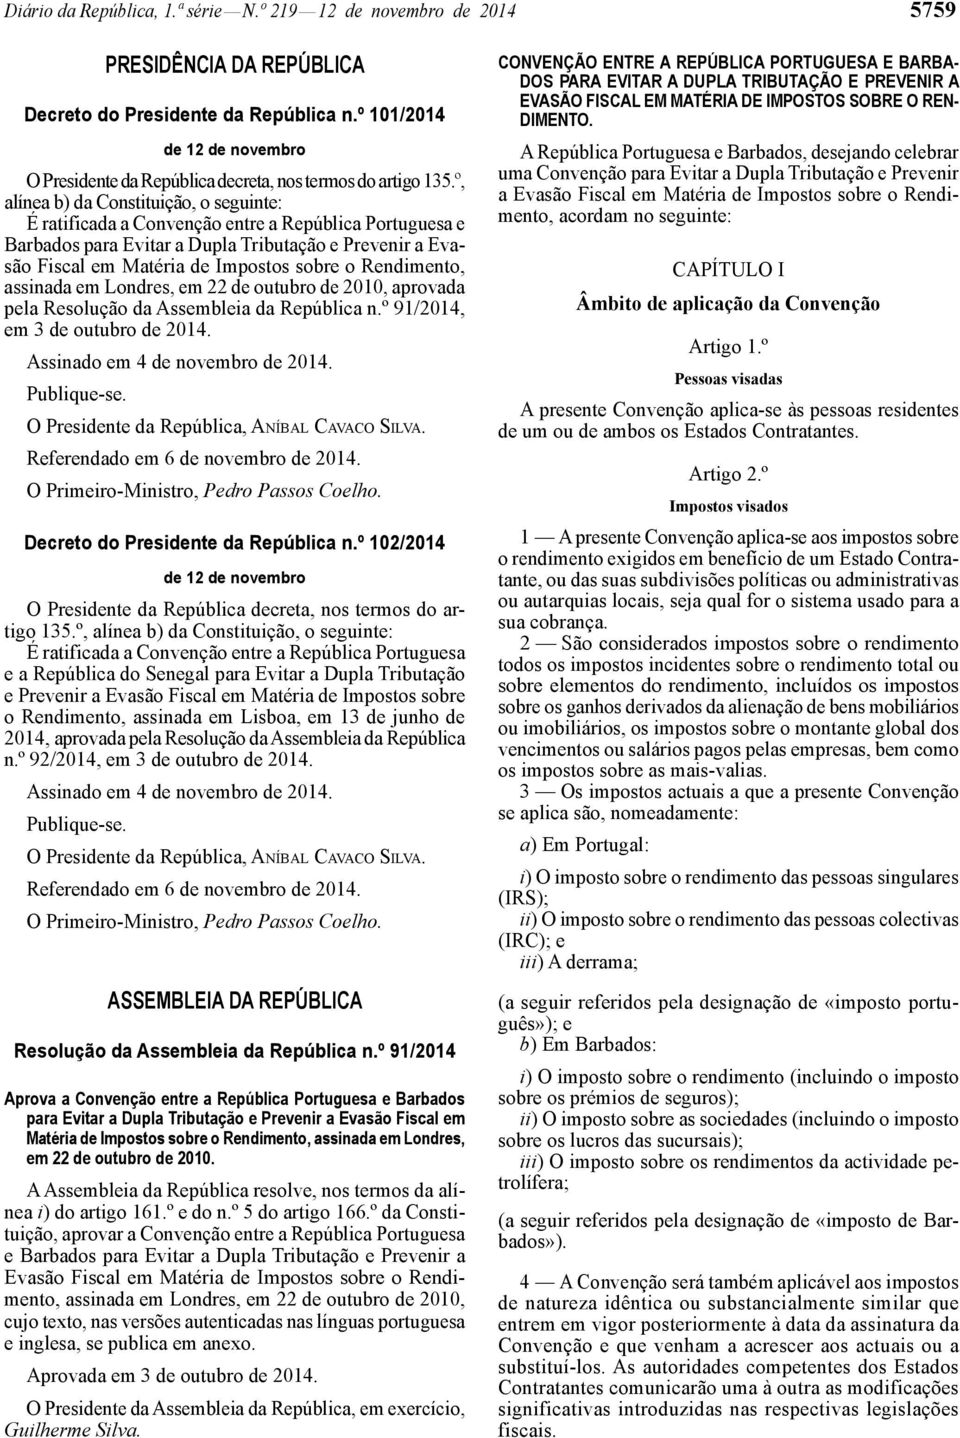 º, alínea b) da Constituição, o seguinte: É ratificada a Convenção entre a República Portuguesa e Barbados para Evitar a Dupla Tributação e Prevenir a Evasão Fiscal em Matéria de Impostos sobre o